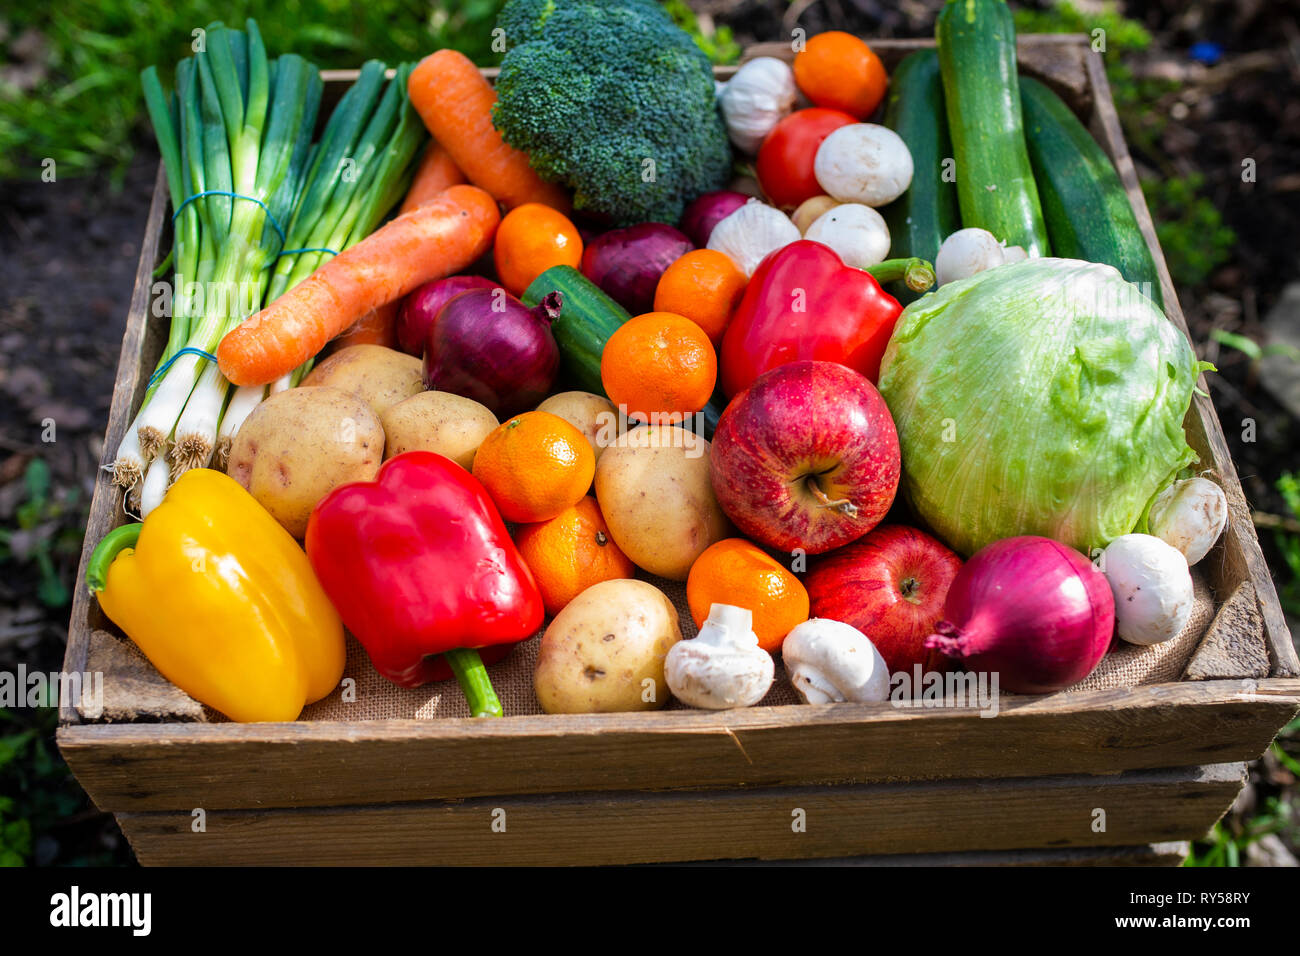 Fruits et légumes en caisse.Une caisse rustique en bois vintage remplie de fruits et légumes colorés favorisant la nourriture végétalienne biologique fraîche et saine.Végétarienne Banque D'Images